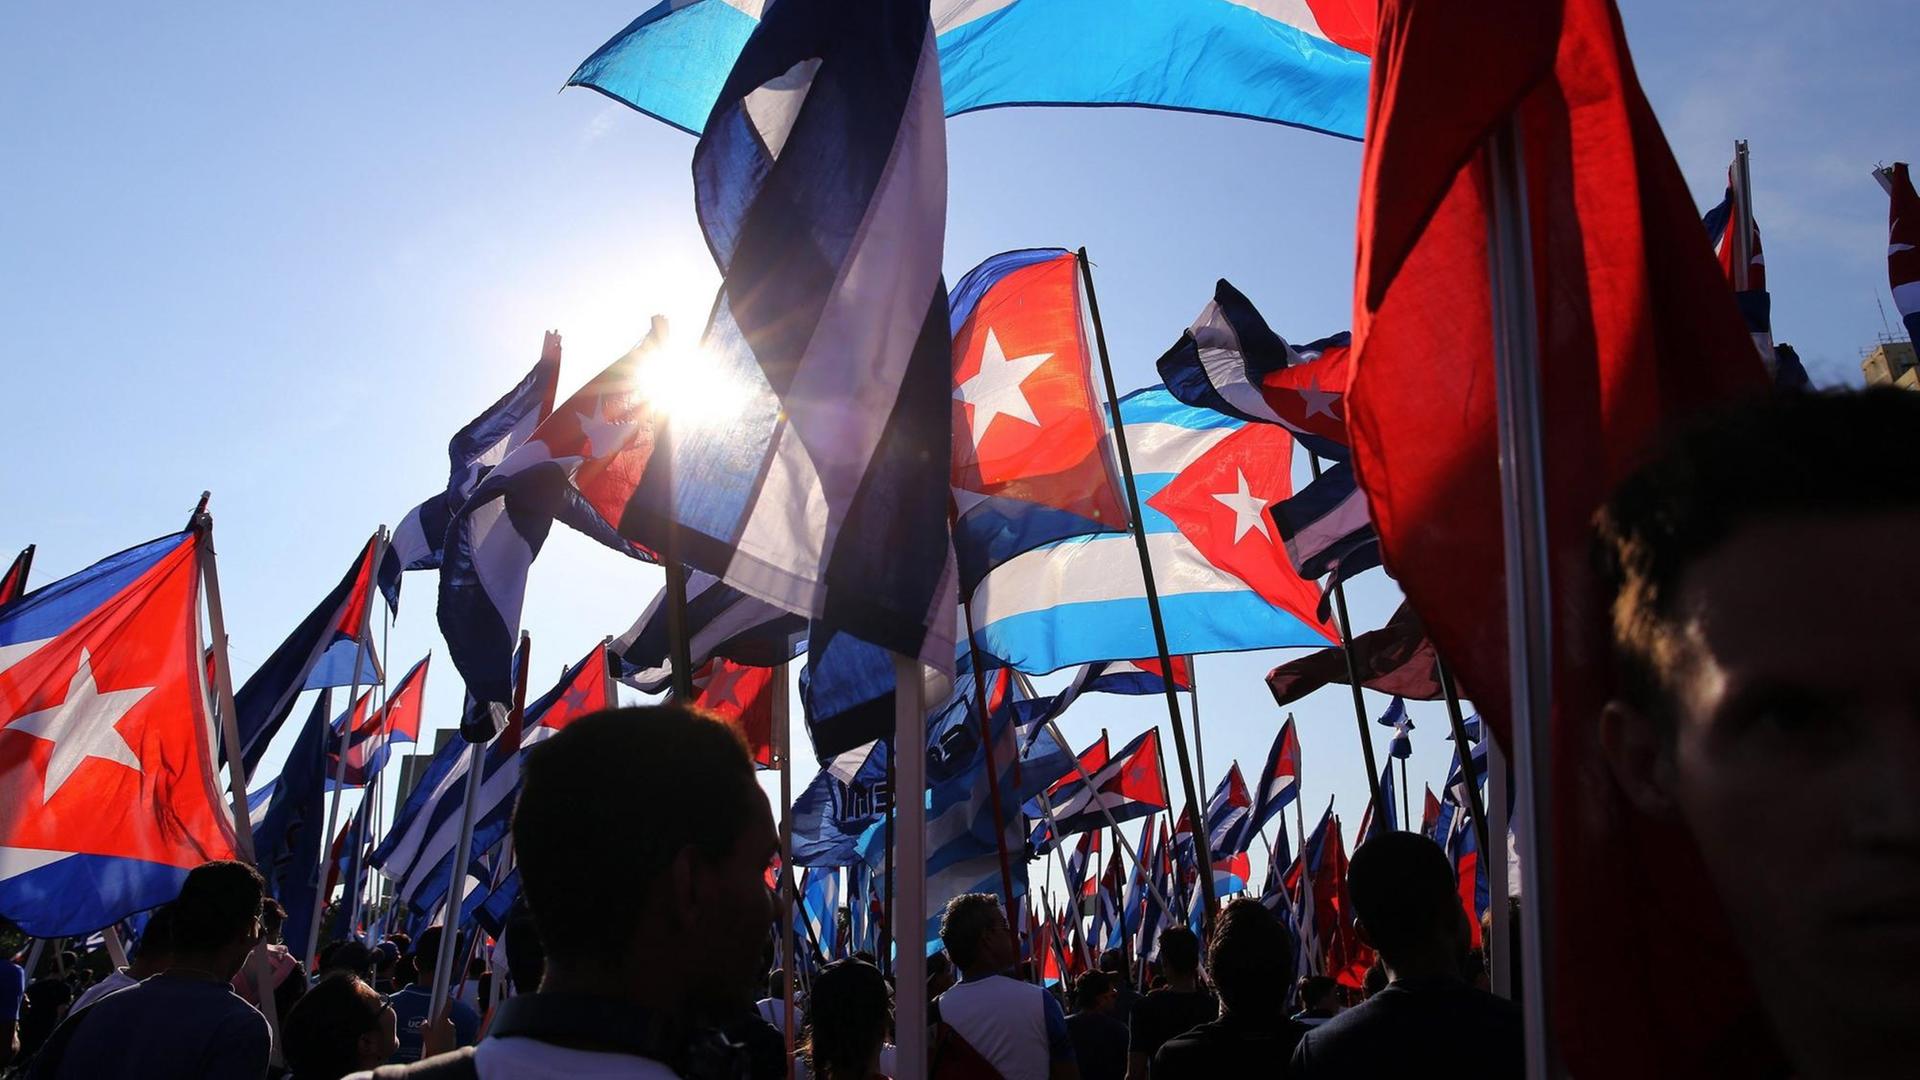 Versorgungskrise - Kuba sagt traditionelle Parade zum 1. Mai ab